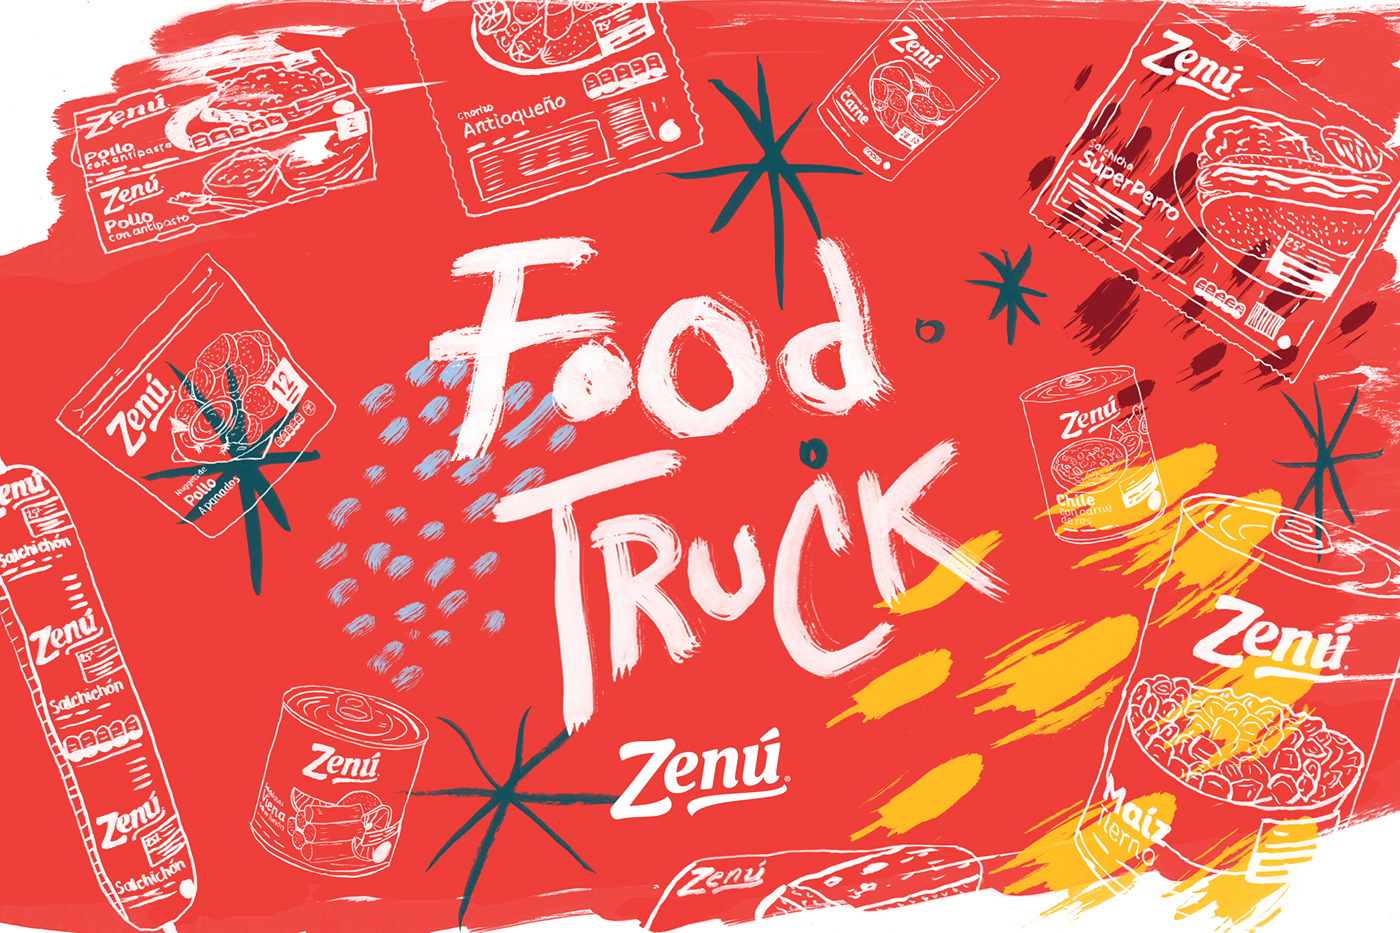 Food truck zenu  DDB medellin washedog brush publicidad Fast food